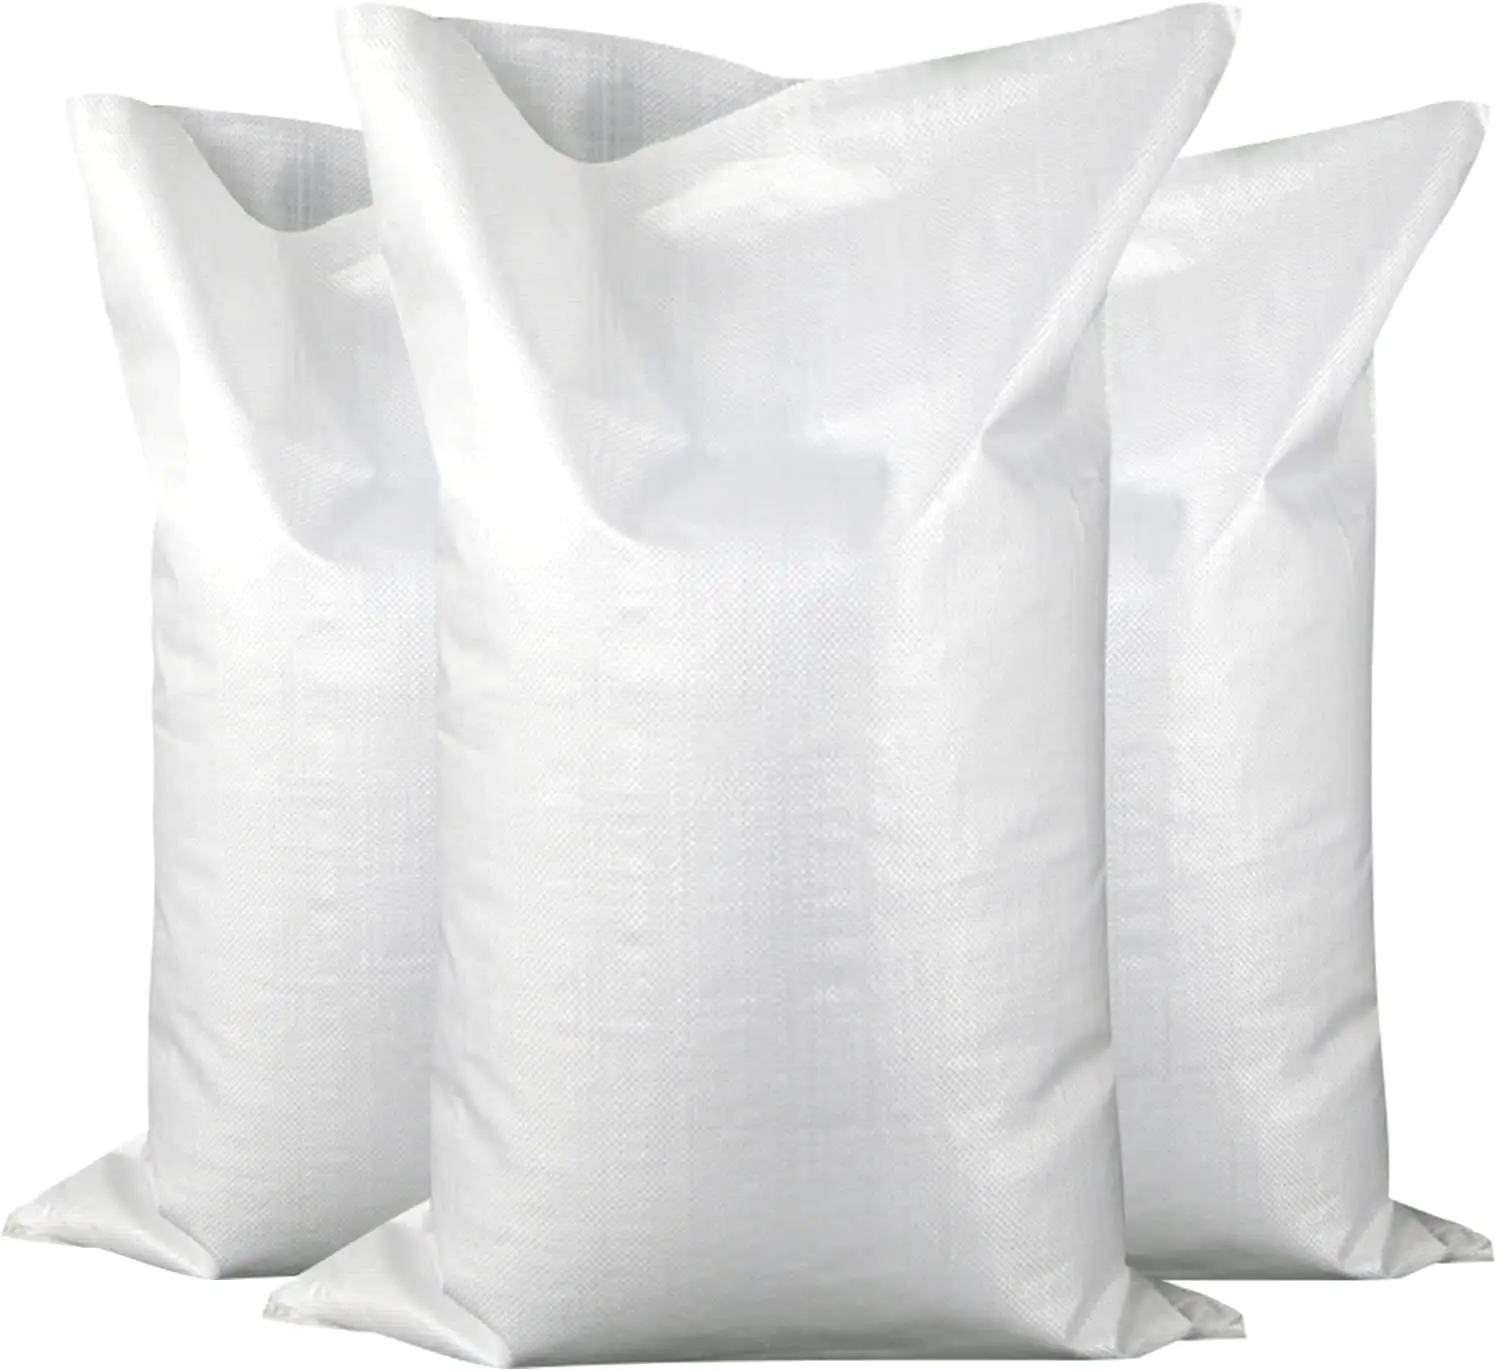 Großhandel billig robuste haltbare Polypropylen gewebte Tasche für Kies Packt asche